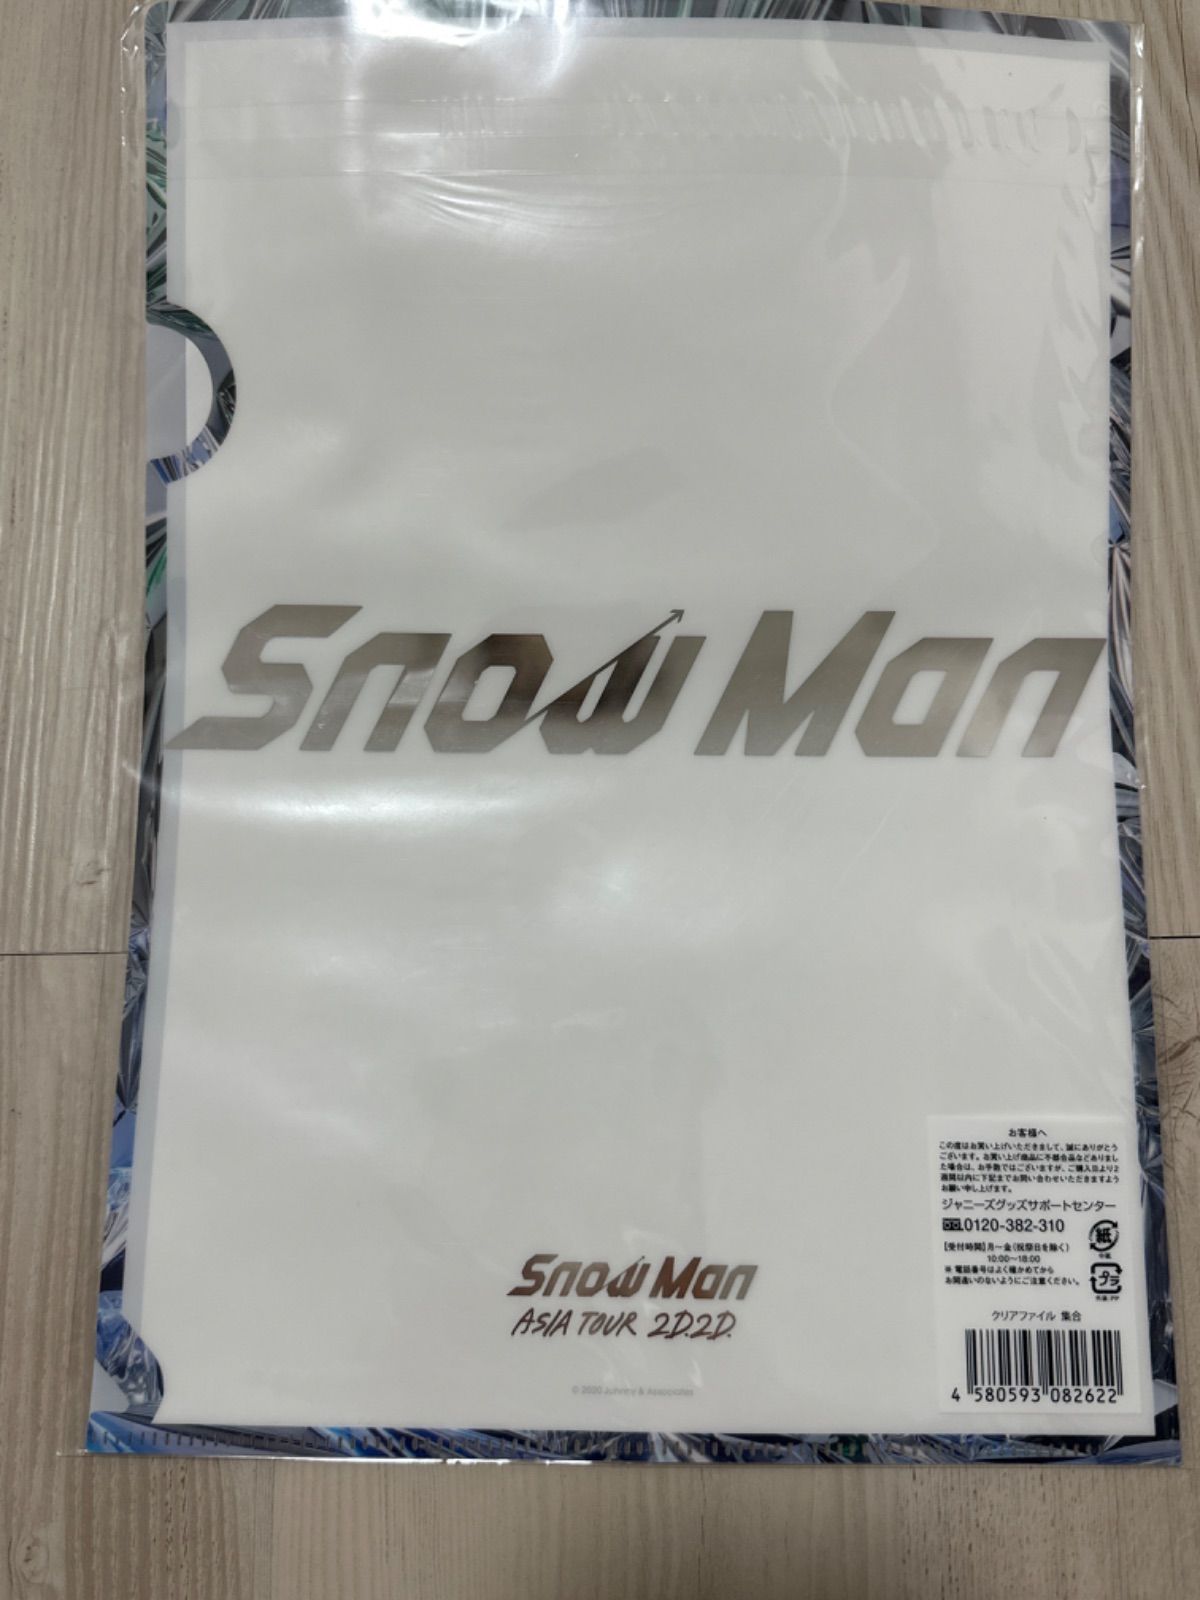 Snow Man 2D.2D. クリアファイル - アイドル